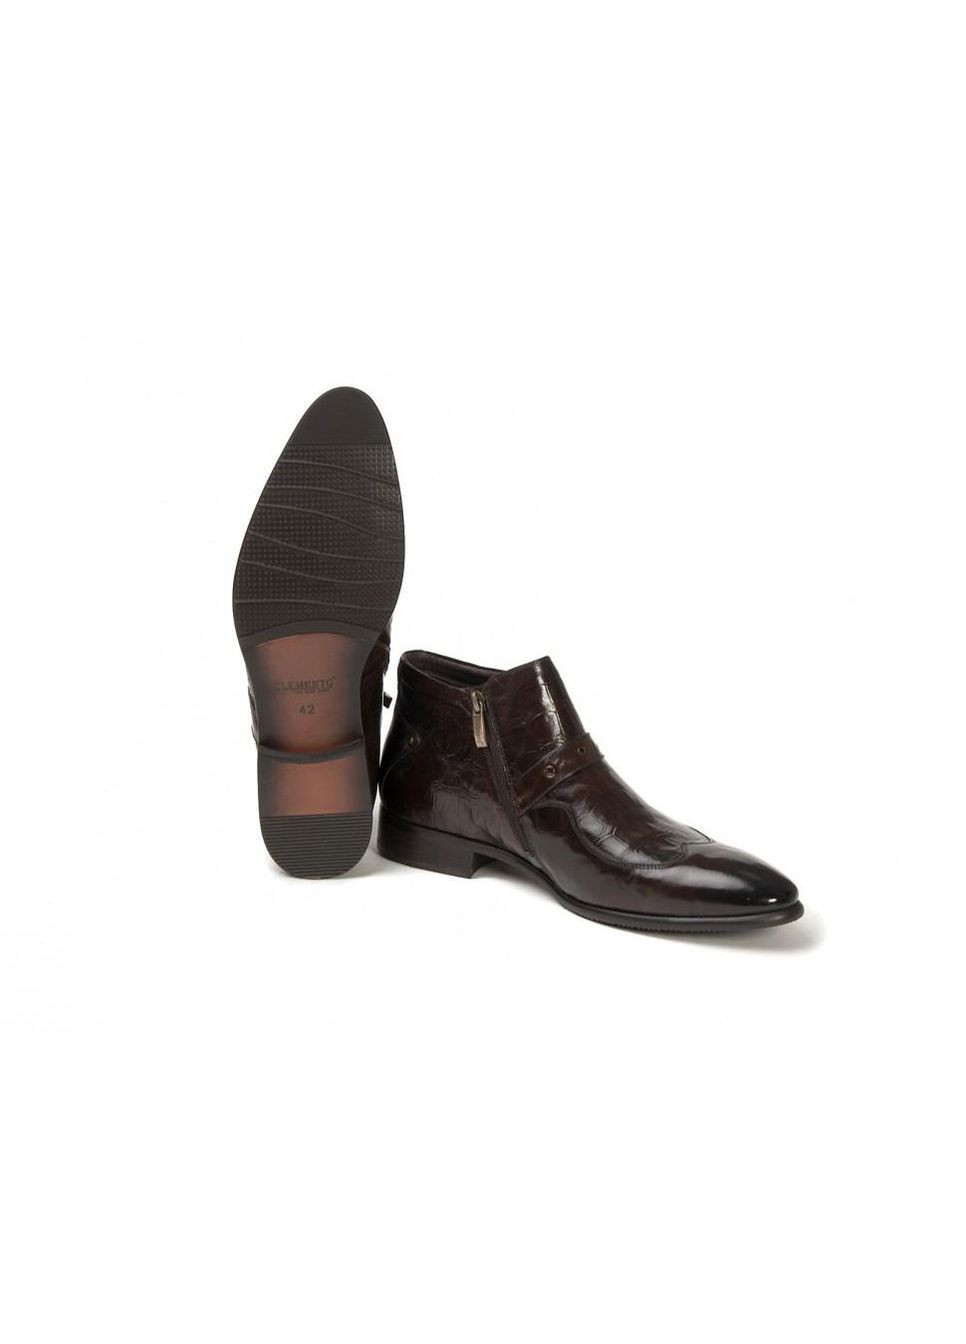 Коричневые ботинки 7124771 цвет коричневый Clemento